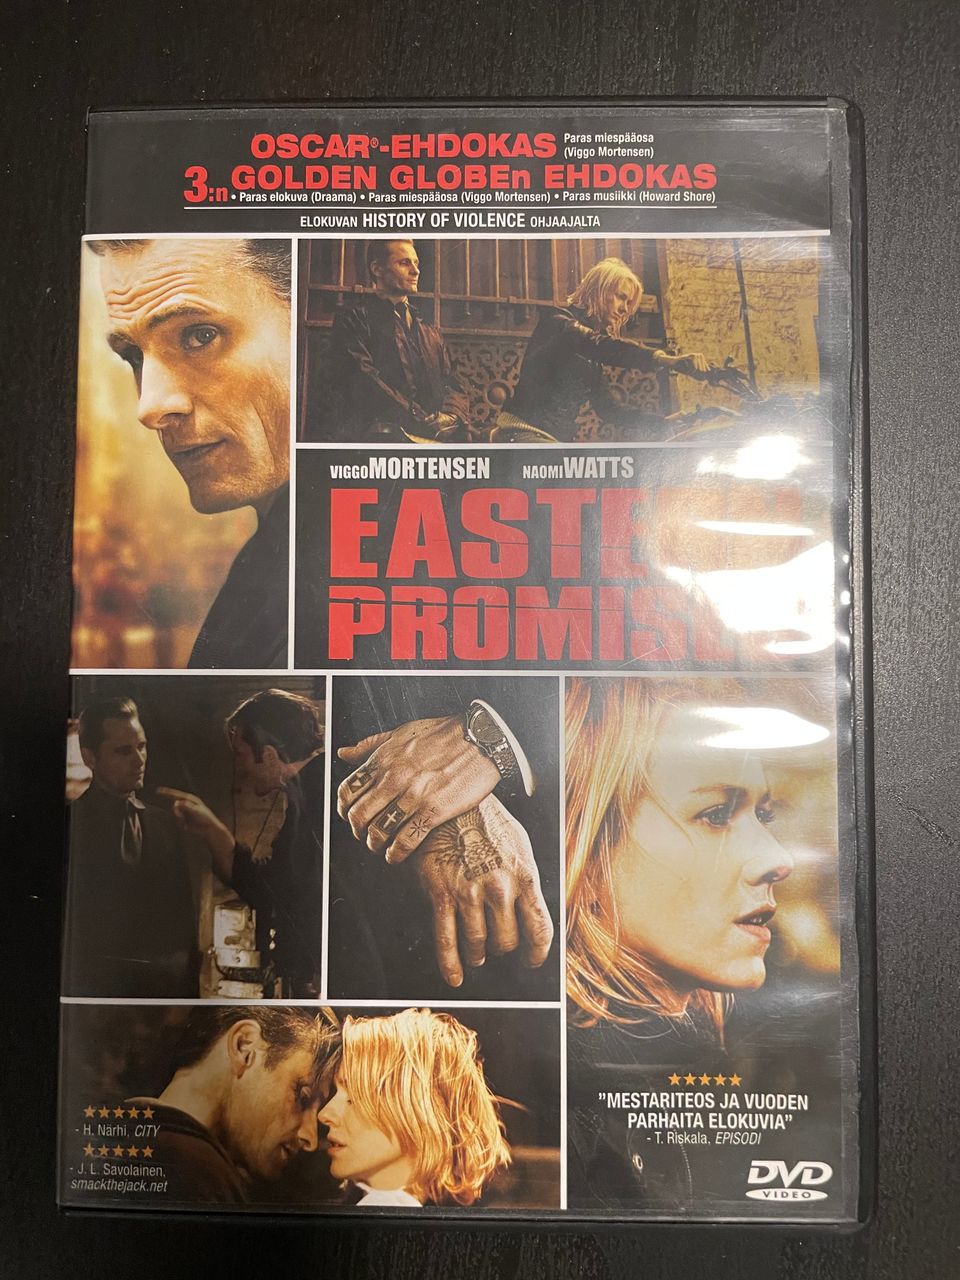 Eastern Promises DVD